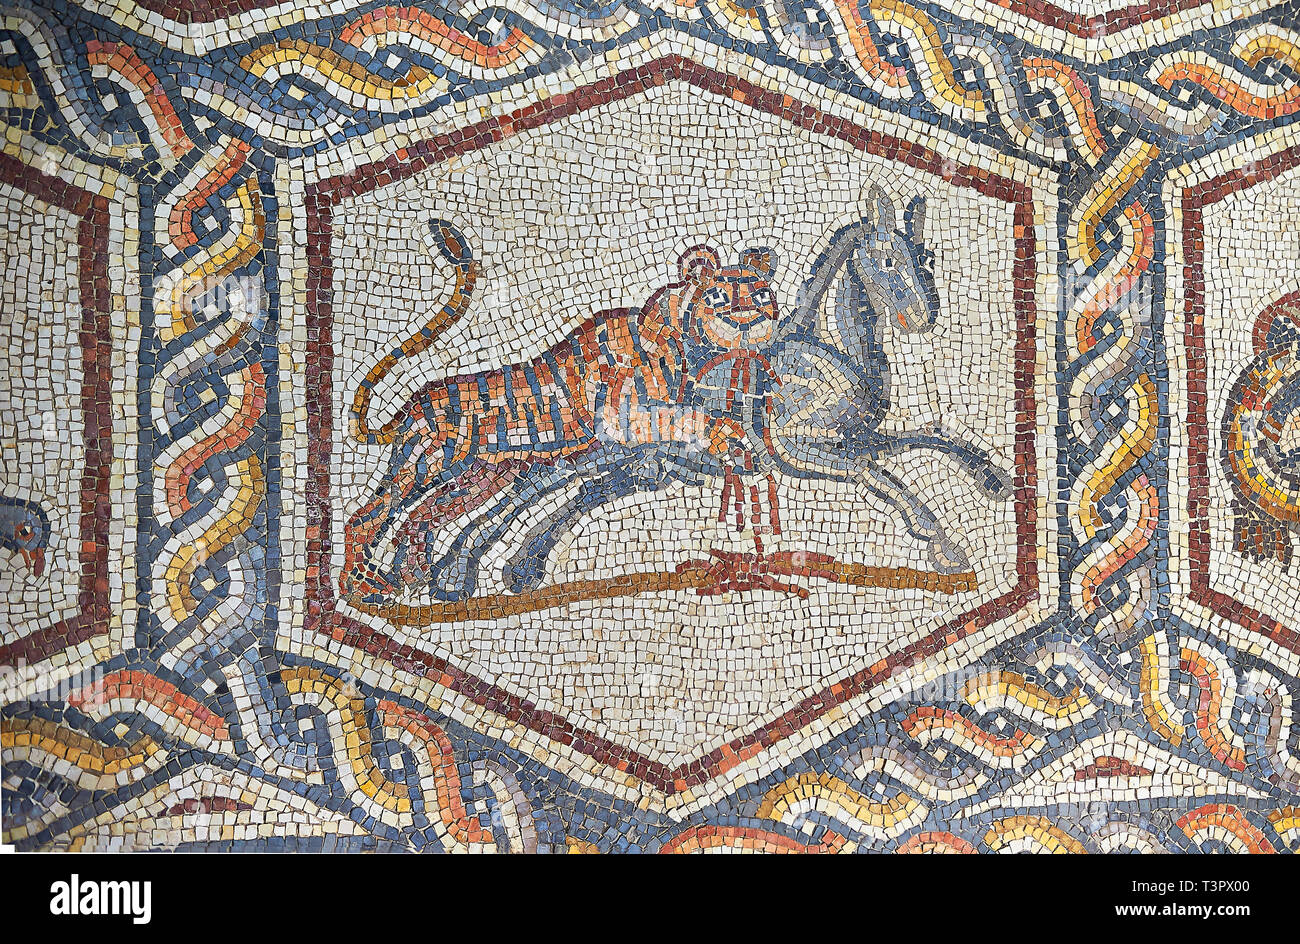 La chasse d'un tigre à partir de la 3e siècle mosaïque romaine villa étage de Lod, près de Tel Aviv, Israël. La mosaïque romaine de Lod est le plus grand et le mieux p Banque D'Images